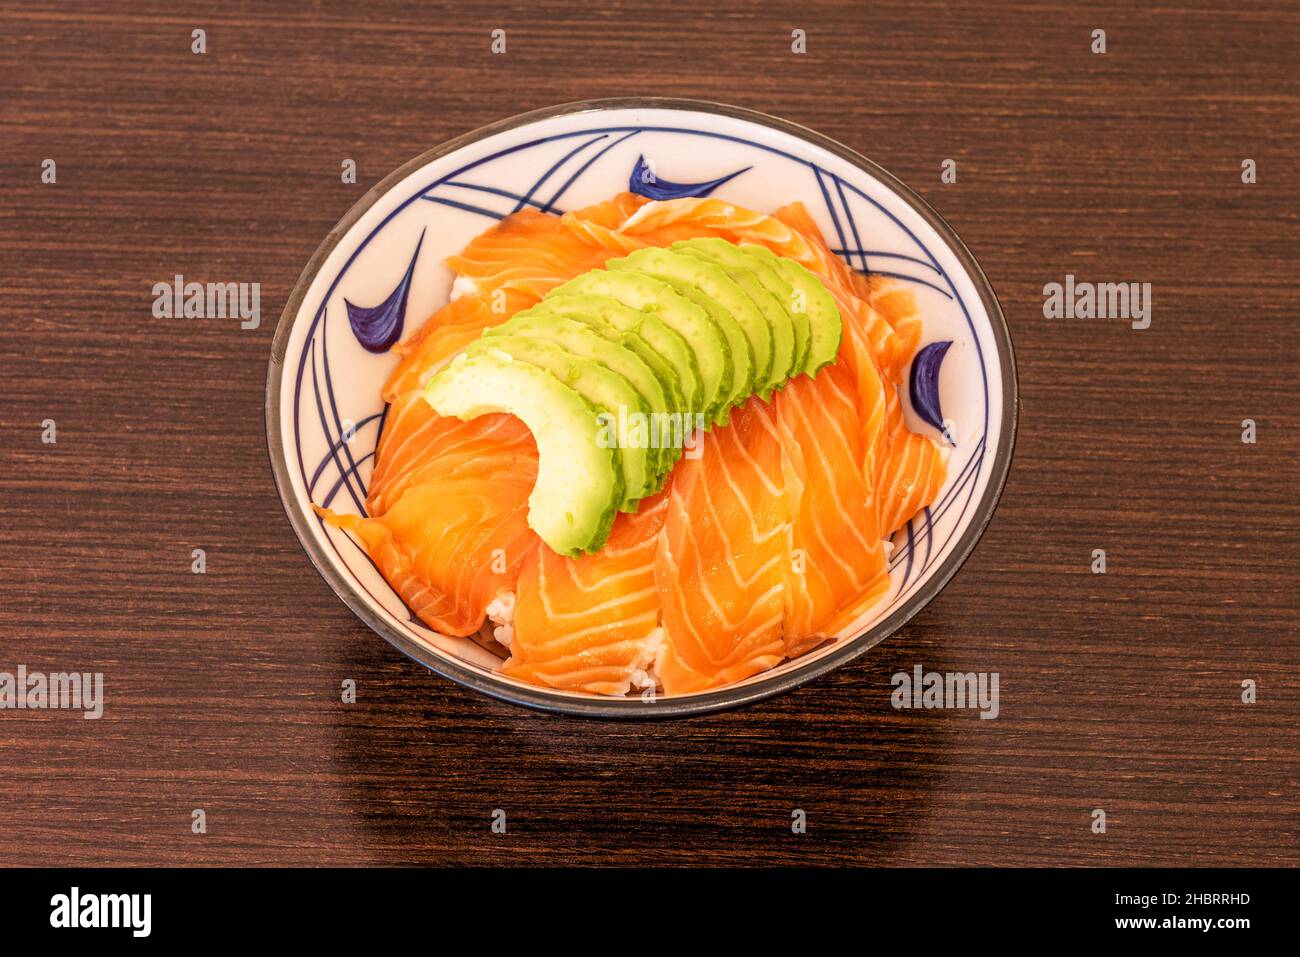 Le saumon chirashi est un symbole de la cuisine japonaise.Un des joyaux gastronomiques qui se distingue par une façon de préparer la nourriture ancestrale, à l'exception Banque D'Images